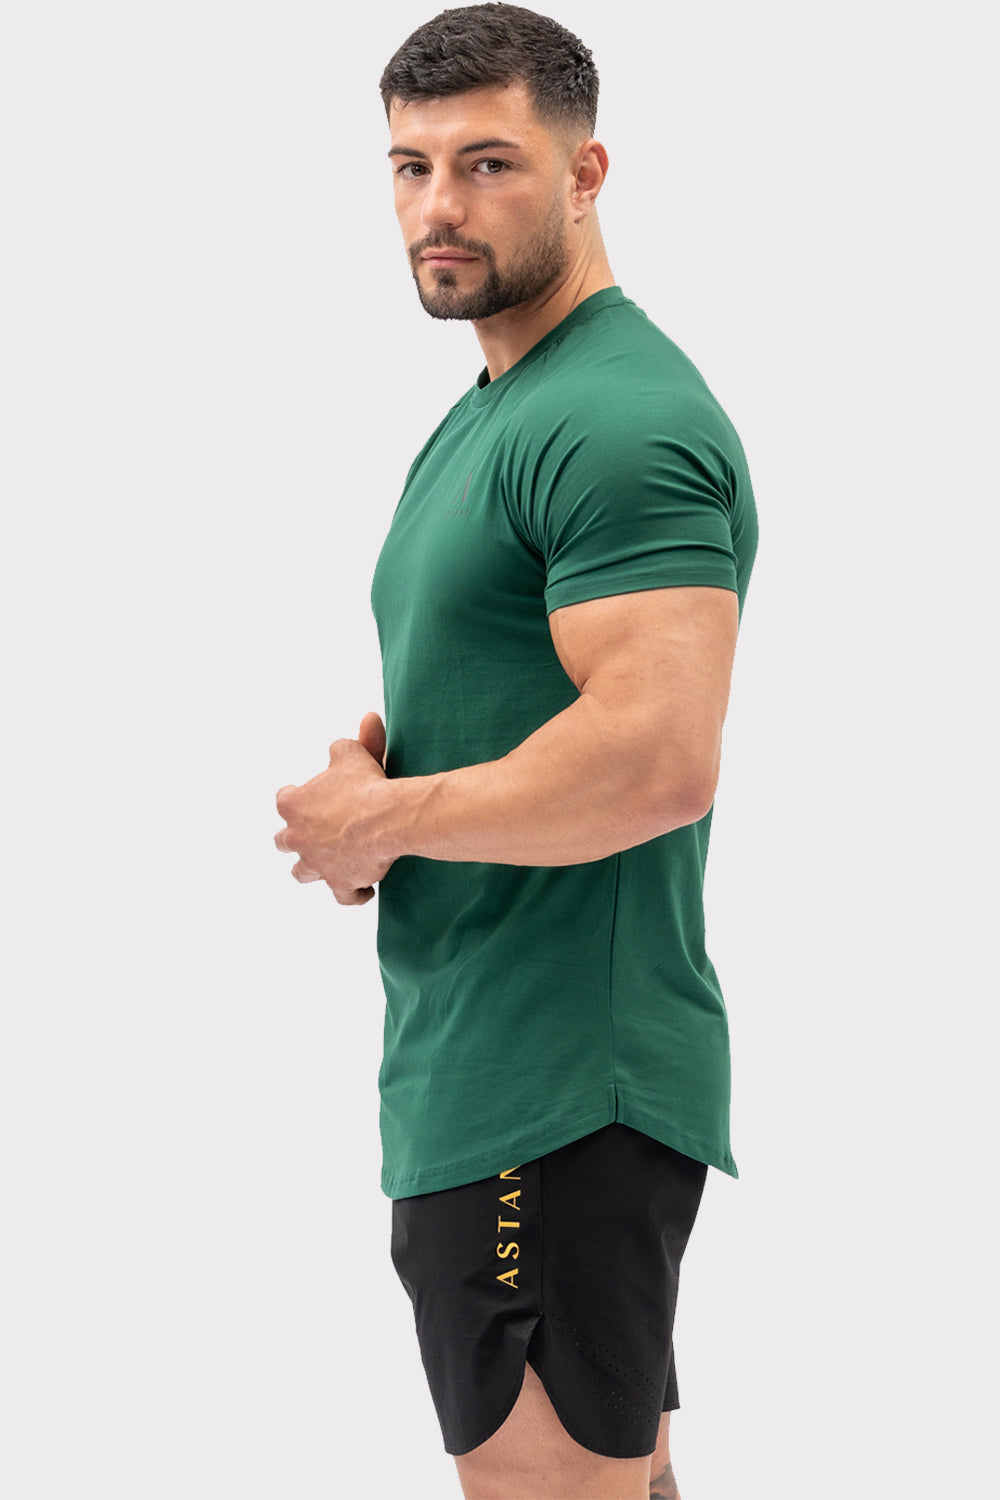 A CODE T-Shirt - Tmavě zelené